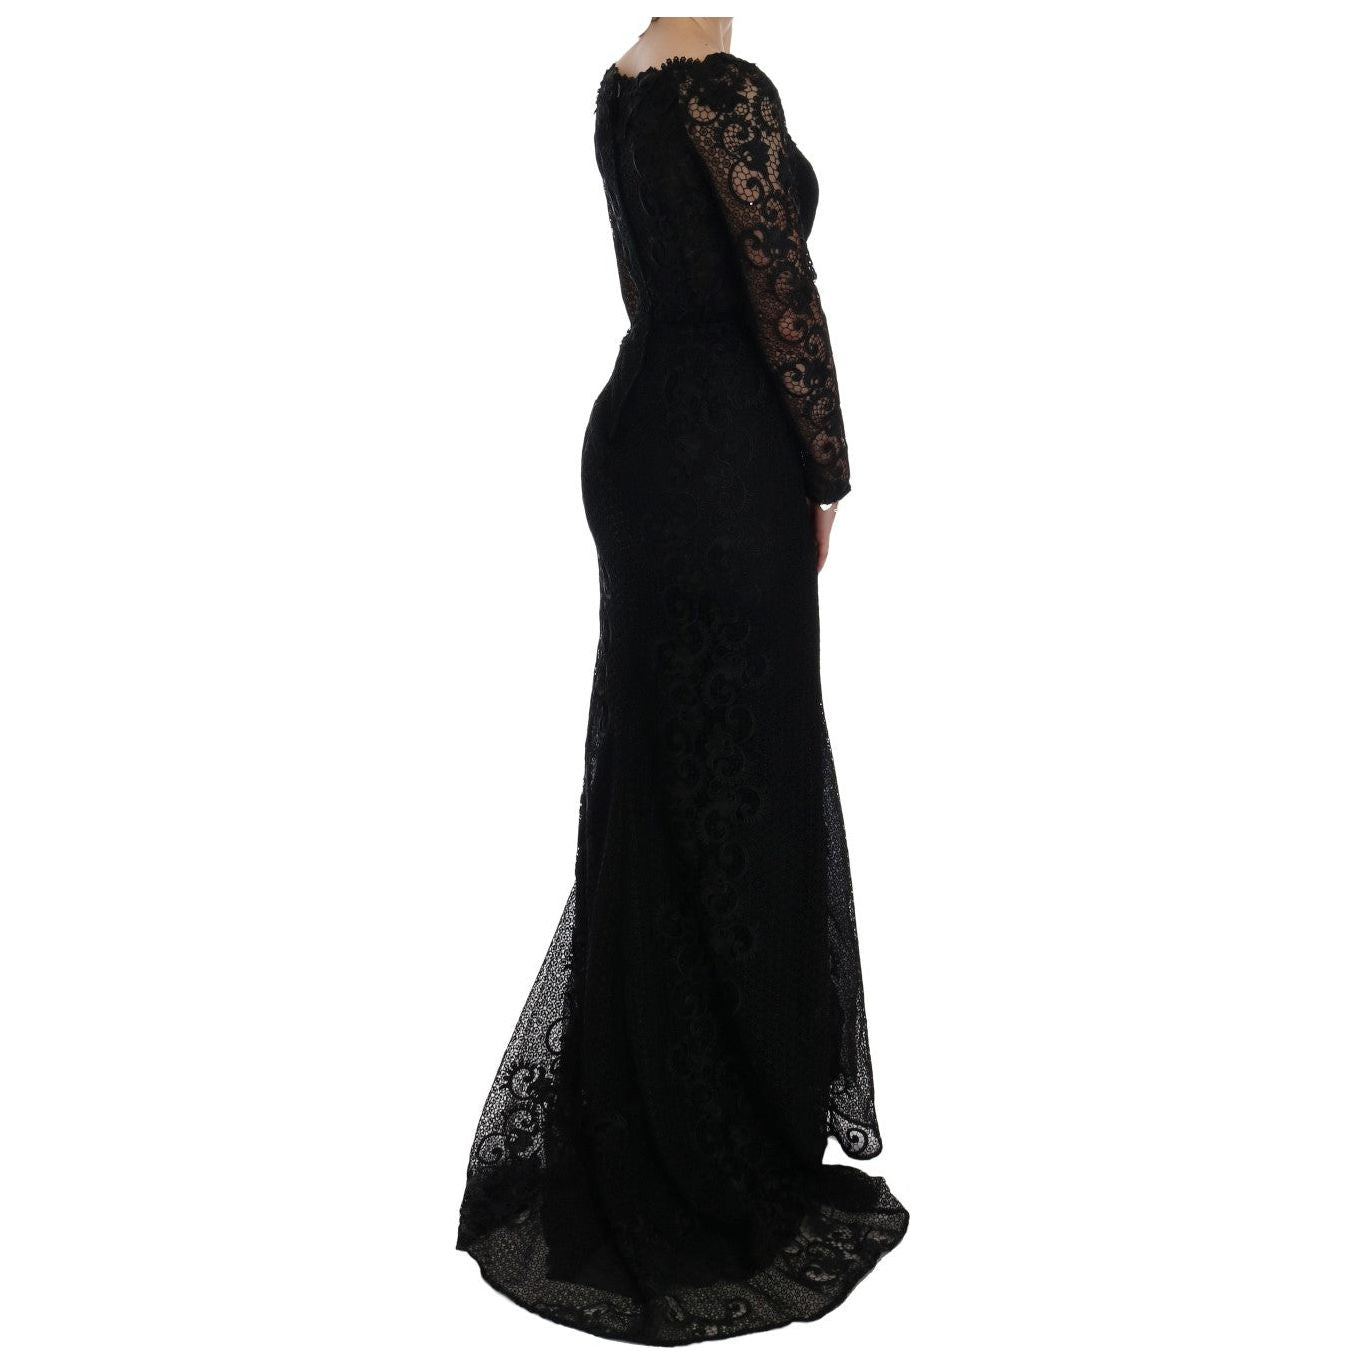 Dolce & GabbanaElegant Full Length Black Sheath Maxi DressMcRichard Designer Brands£2109.00